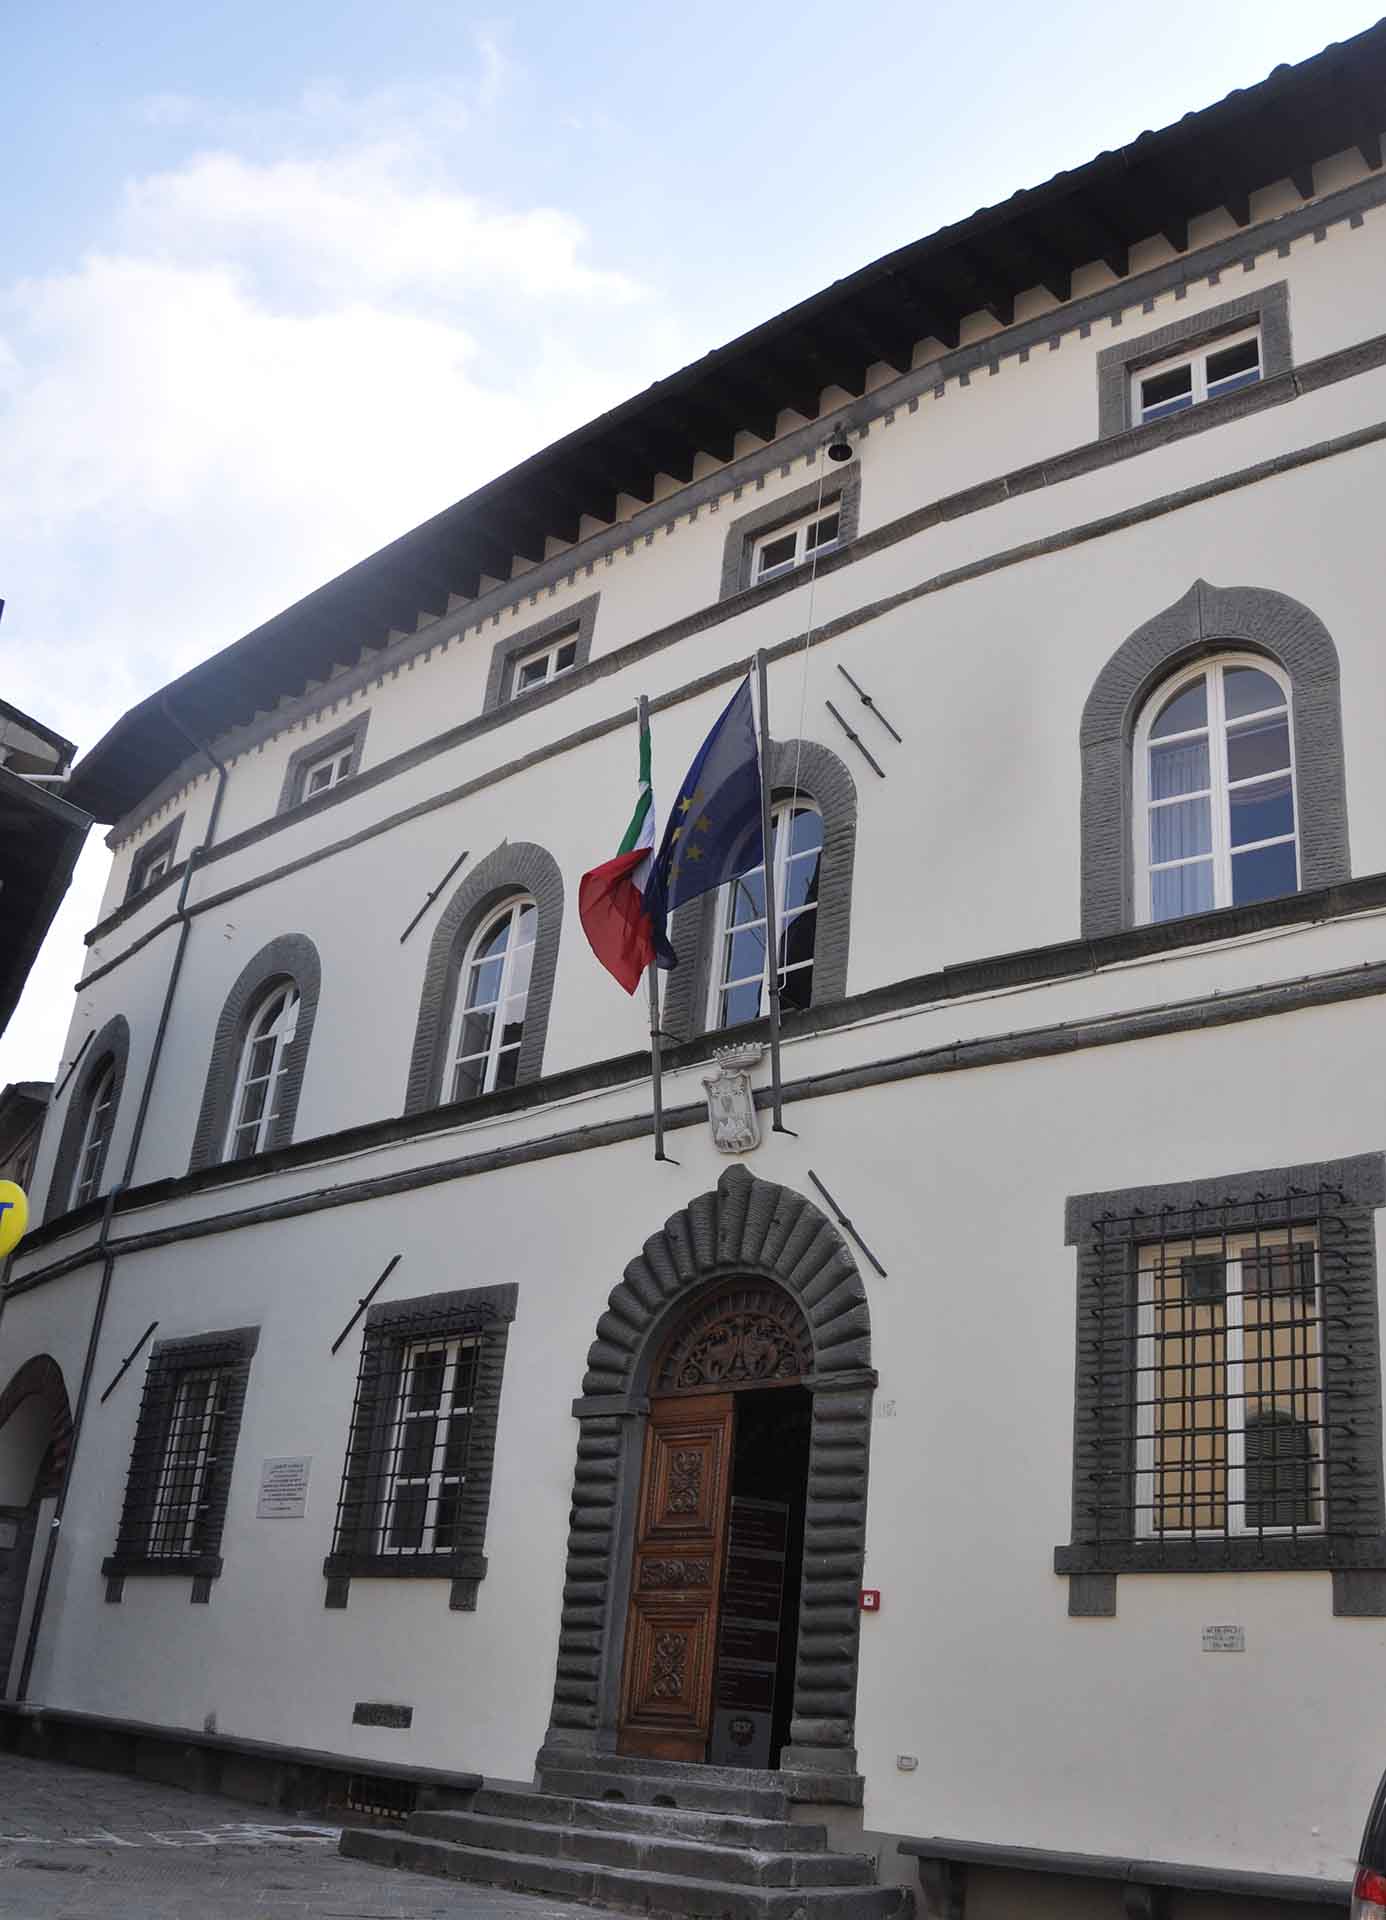 The Municipal Palace. Ph. Credit Municipality of Coreglia Antelminelli